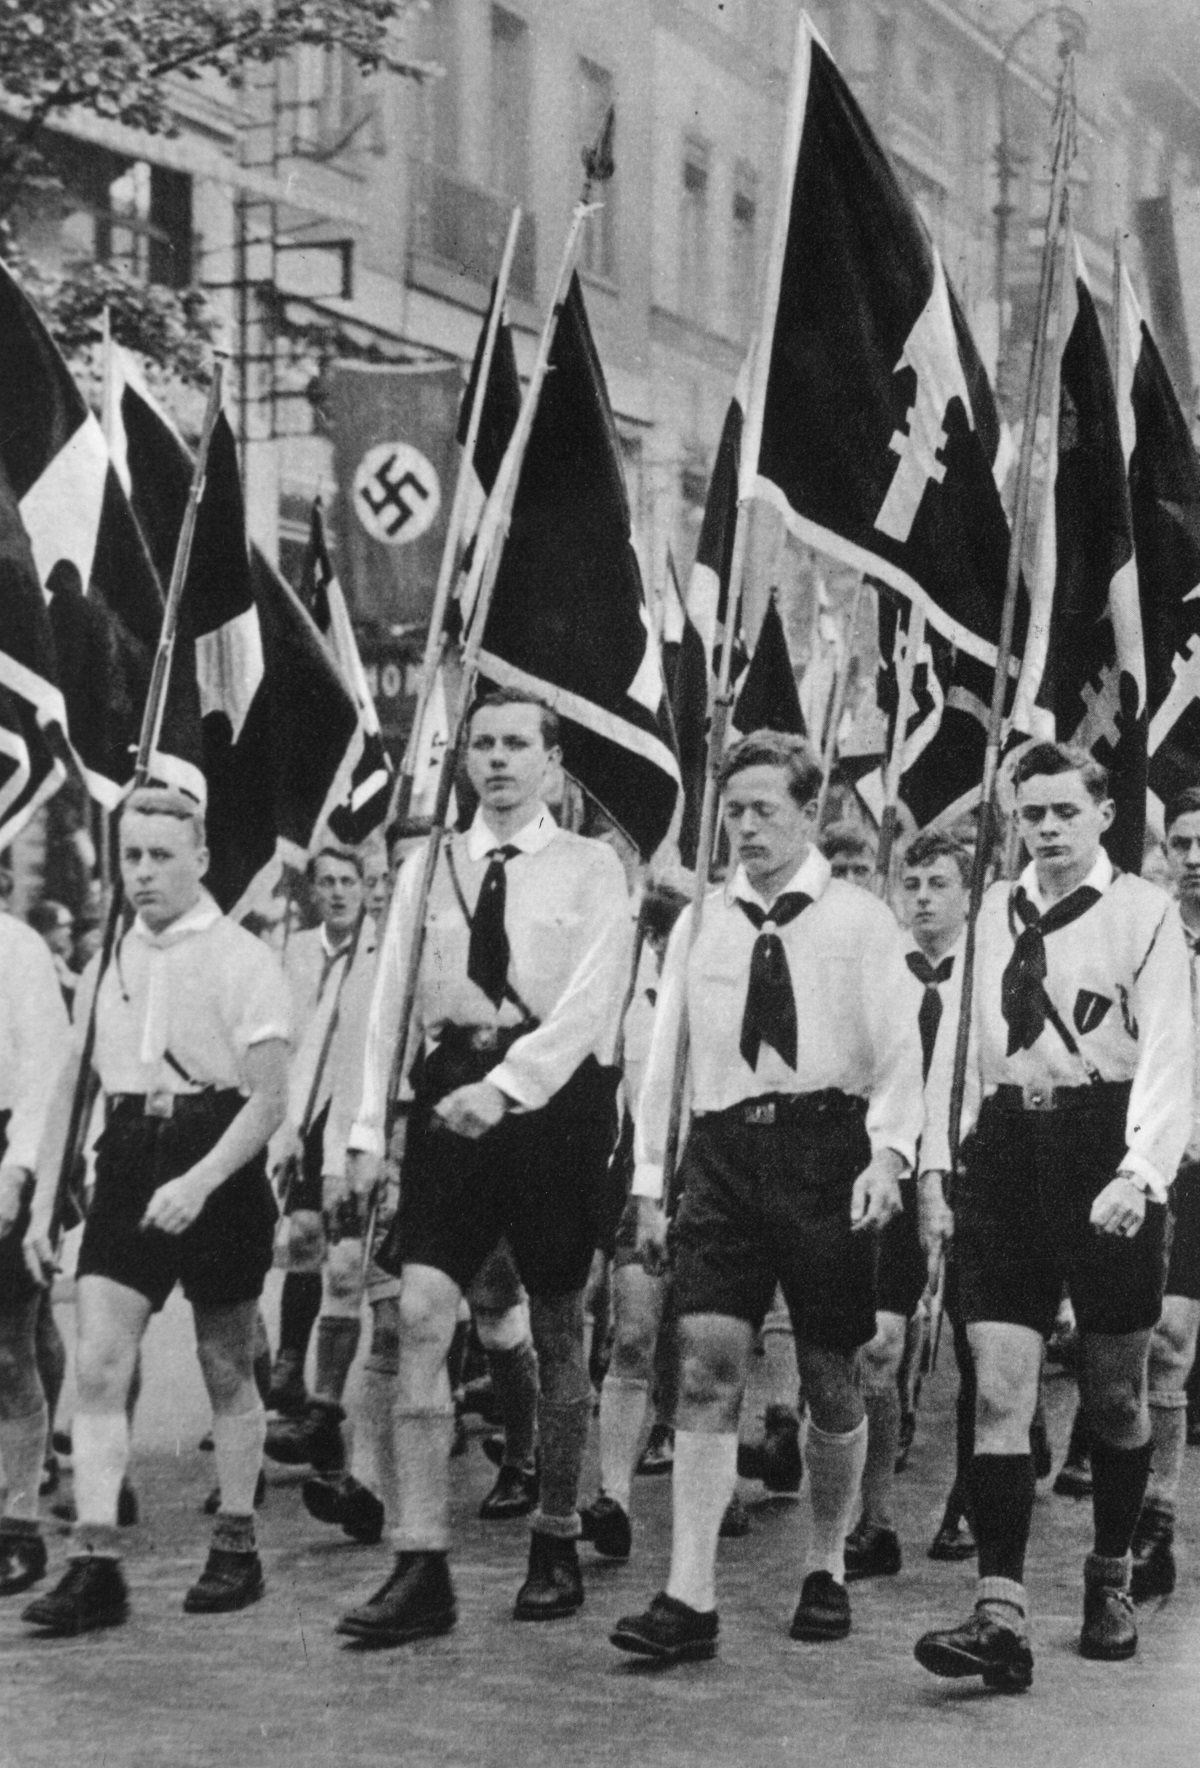 Хитлеровата младеж е основана през 1925 г. и до края на 1932 г. в нея вече членуват 108 хил. младежи. Приемането на закона за Хитлеровата младеж през 1936 г. обаче прави много трудно избягването на членството в групата. Не е изненадващо, че до 1939 г. членовете на Хитлеровата млаеж вече са 8 млн.